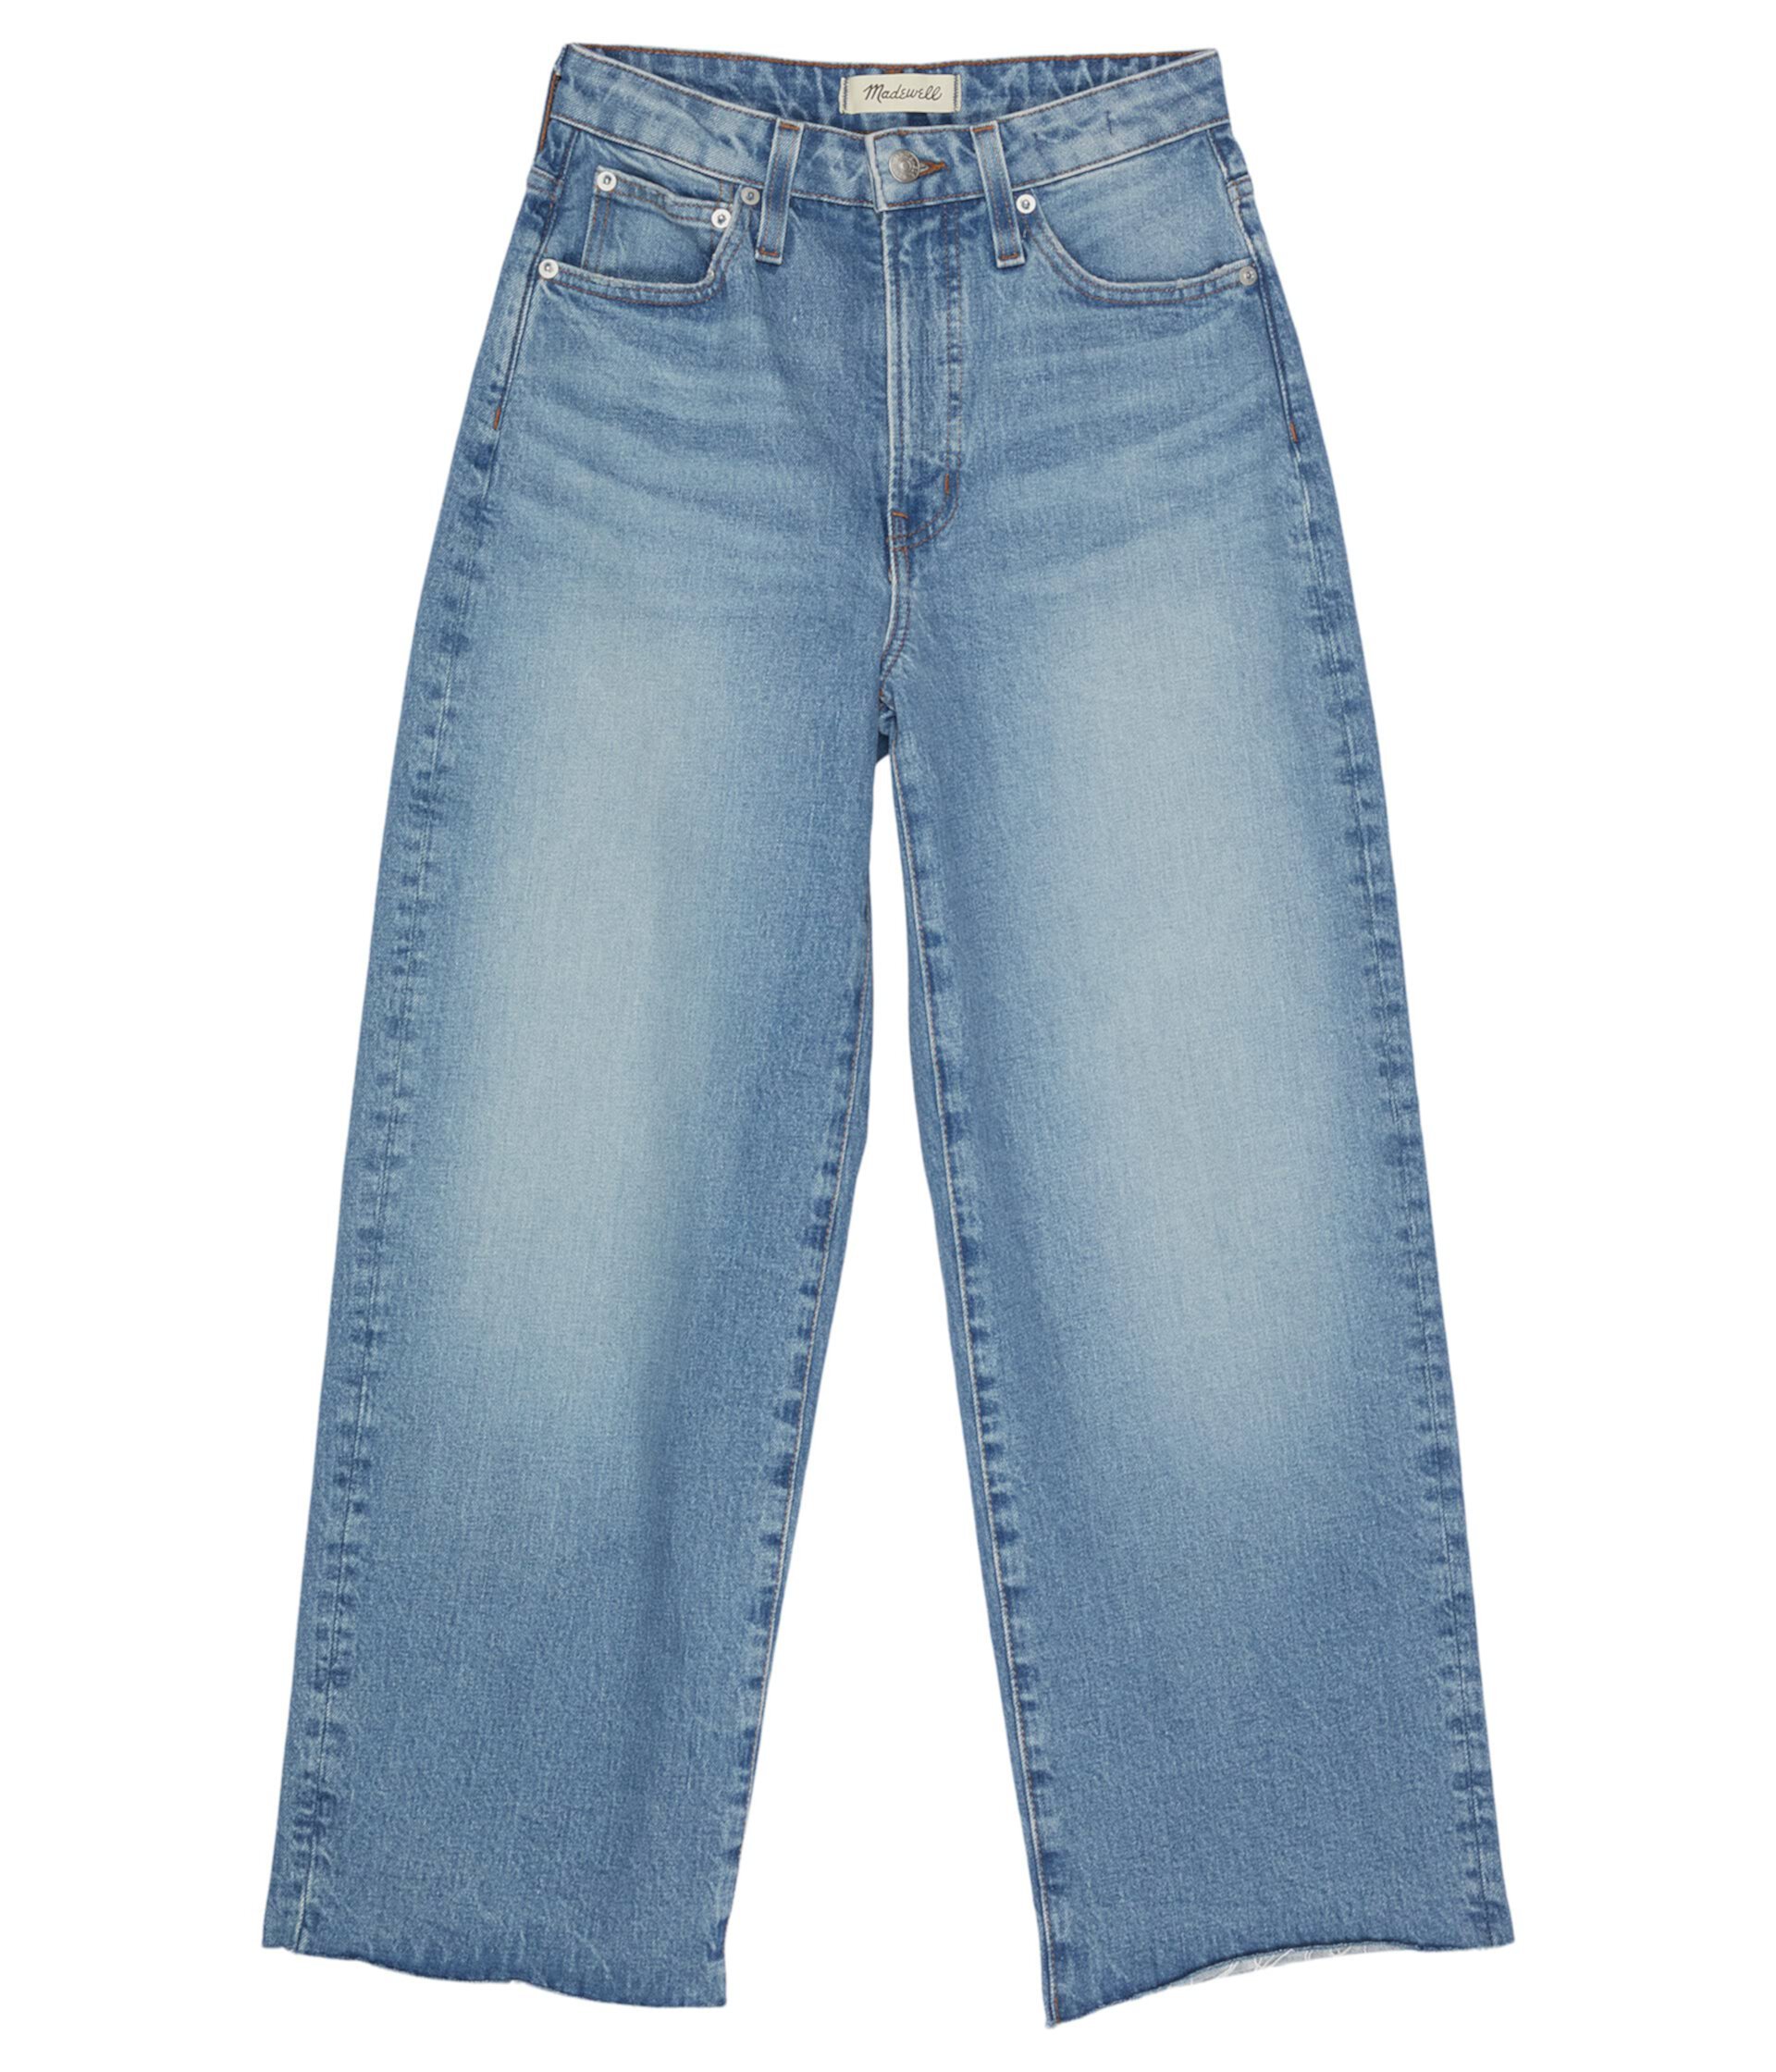 Укороченные джинсы широкого кроя Curvy Perfect Vintage в цвете Catlin Wash Madewell